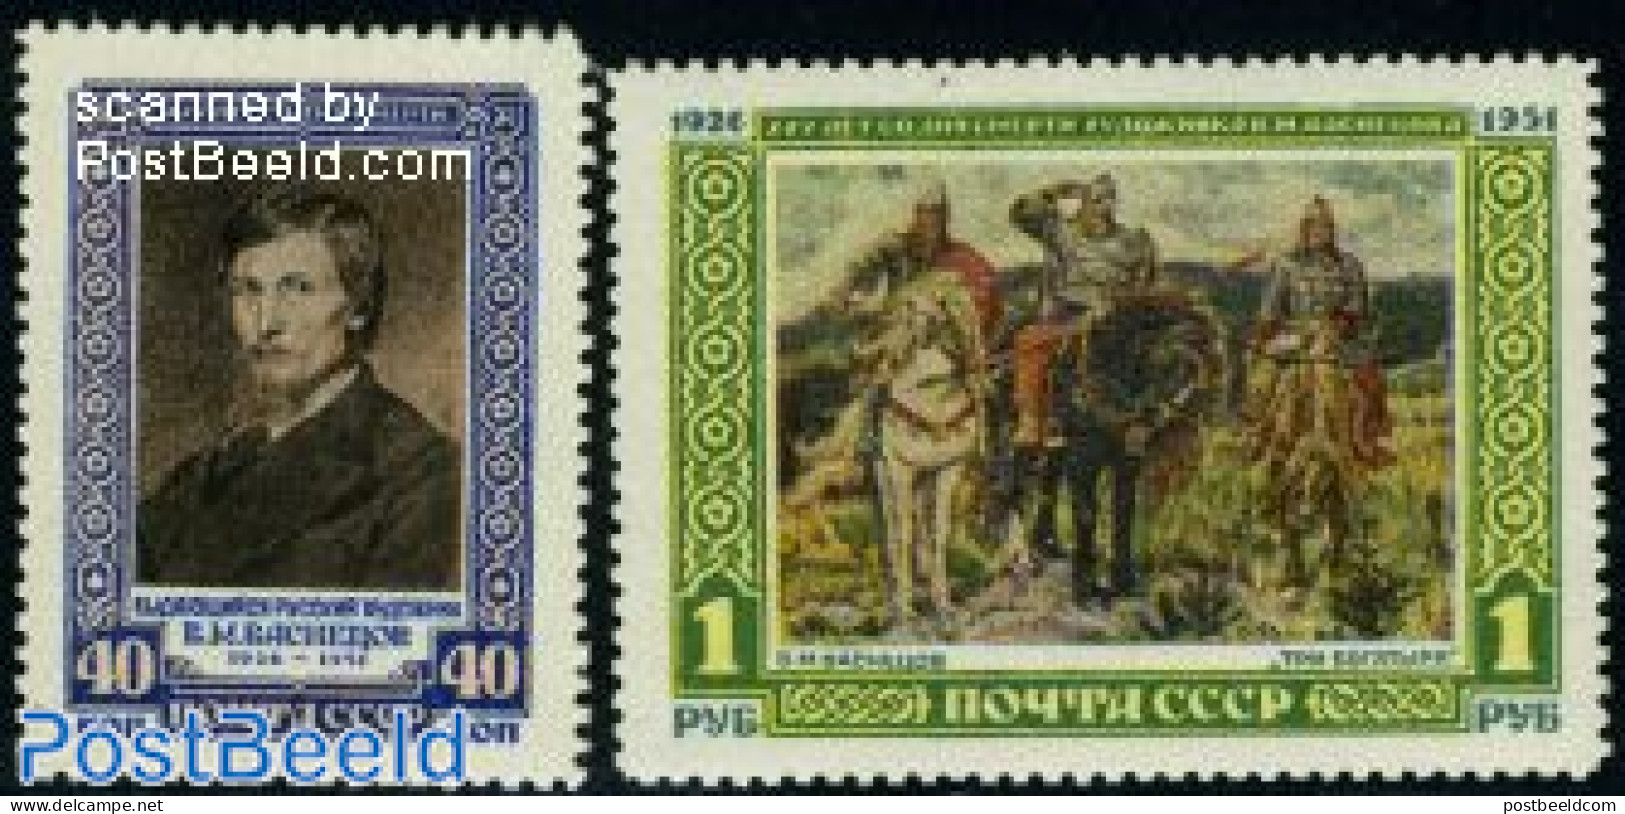 Russia, Soviet Union 1951 Wassnezov Paintings 2v, Mint NH, Art - Paintings - Self Portraits - Unused Stamps